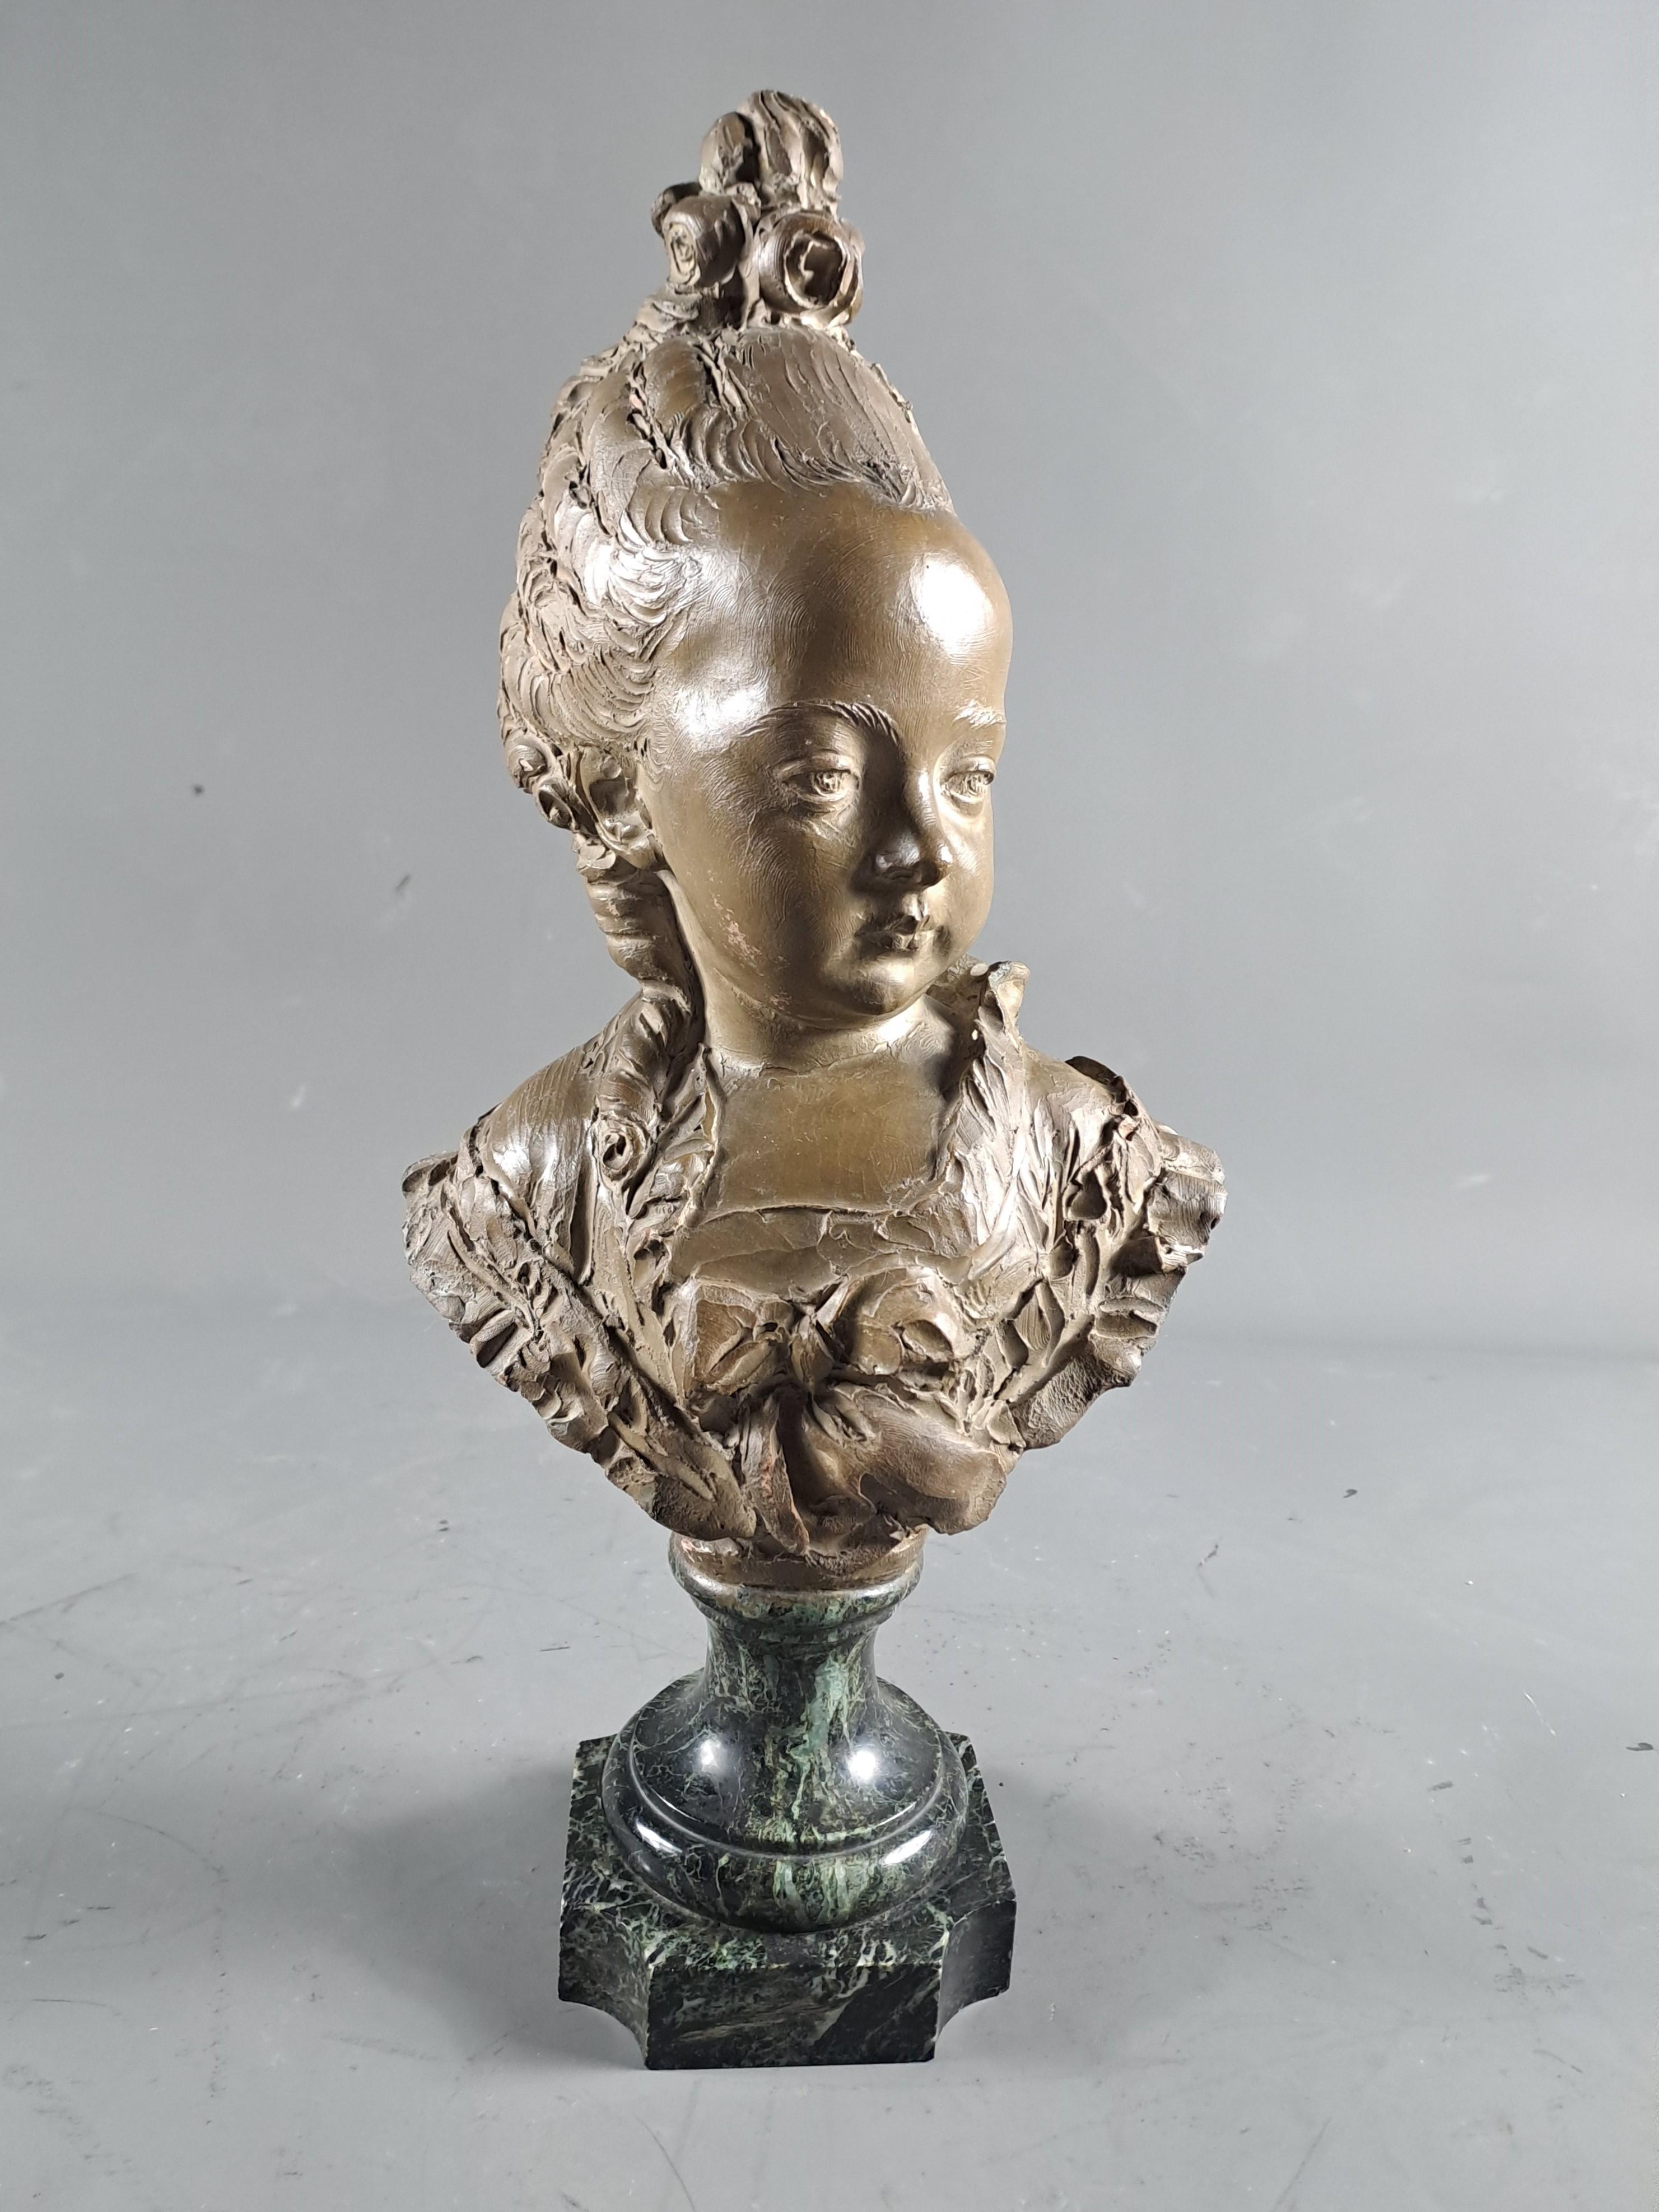 Fernand Cian (1889-1954)

Büste einer eleganten jungen Frau mit Dutt im Stil des 18. Jahrhunderts.

Patinierte Terrakotta auf einem Sockel aus meergrünem Marmor.

Auf der Rückseite signiert Fernand Cian.

Sehr guter Zustand